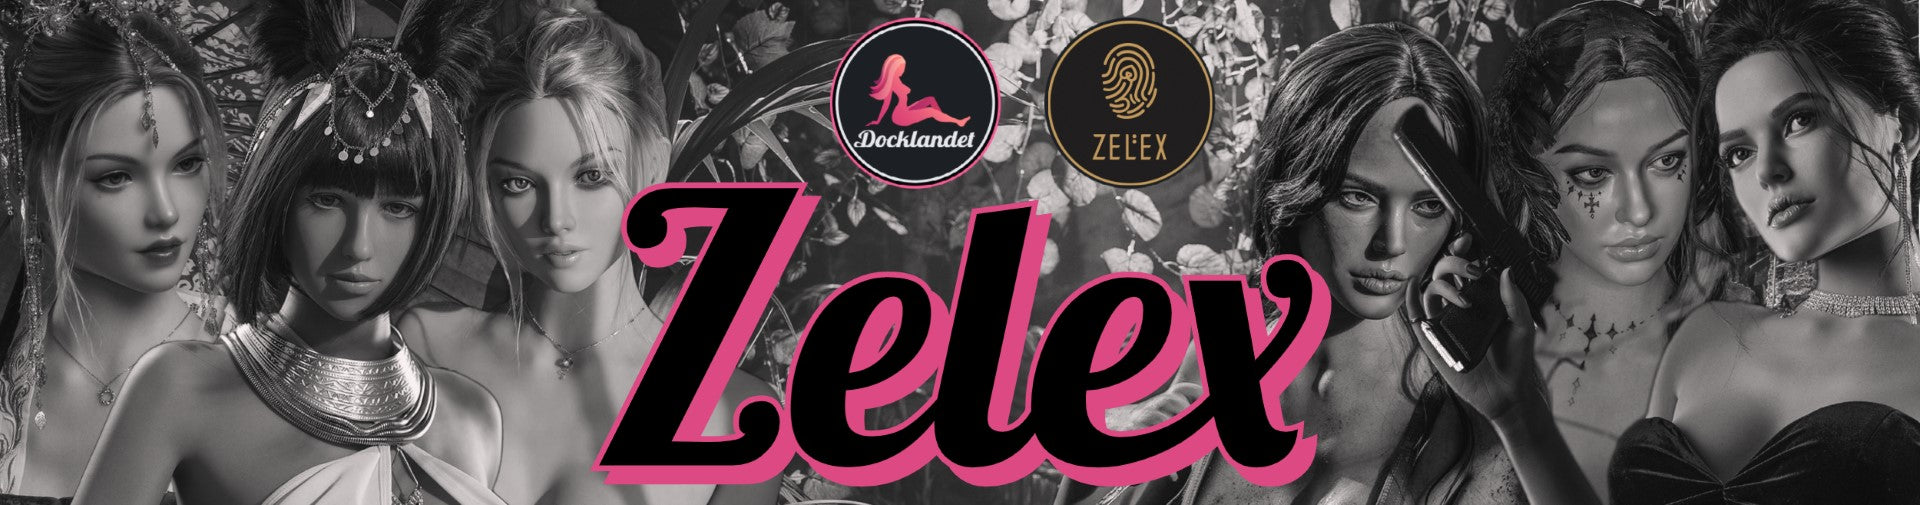 Zelex er eksperter på ekte dukker og sexdukker. Dukkene deres er laget av TPE og silikon av absolutt høyeste kvalitet (importert fra USA). Kjøp din Zelex real doll på Docklandet i dag. Zelex er en av Kinas ledende produsenter av naturtro dukker.